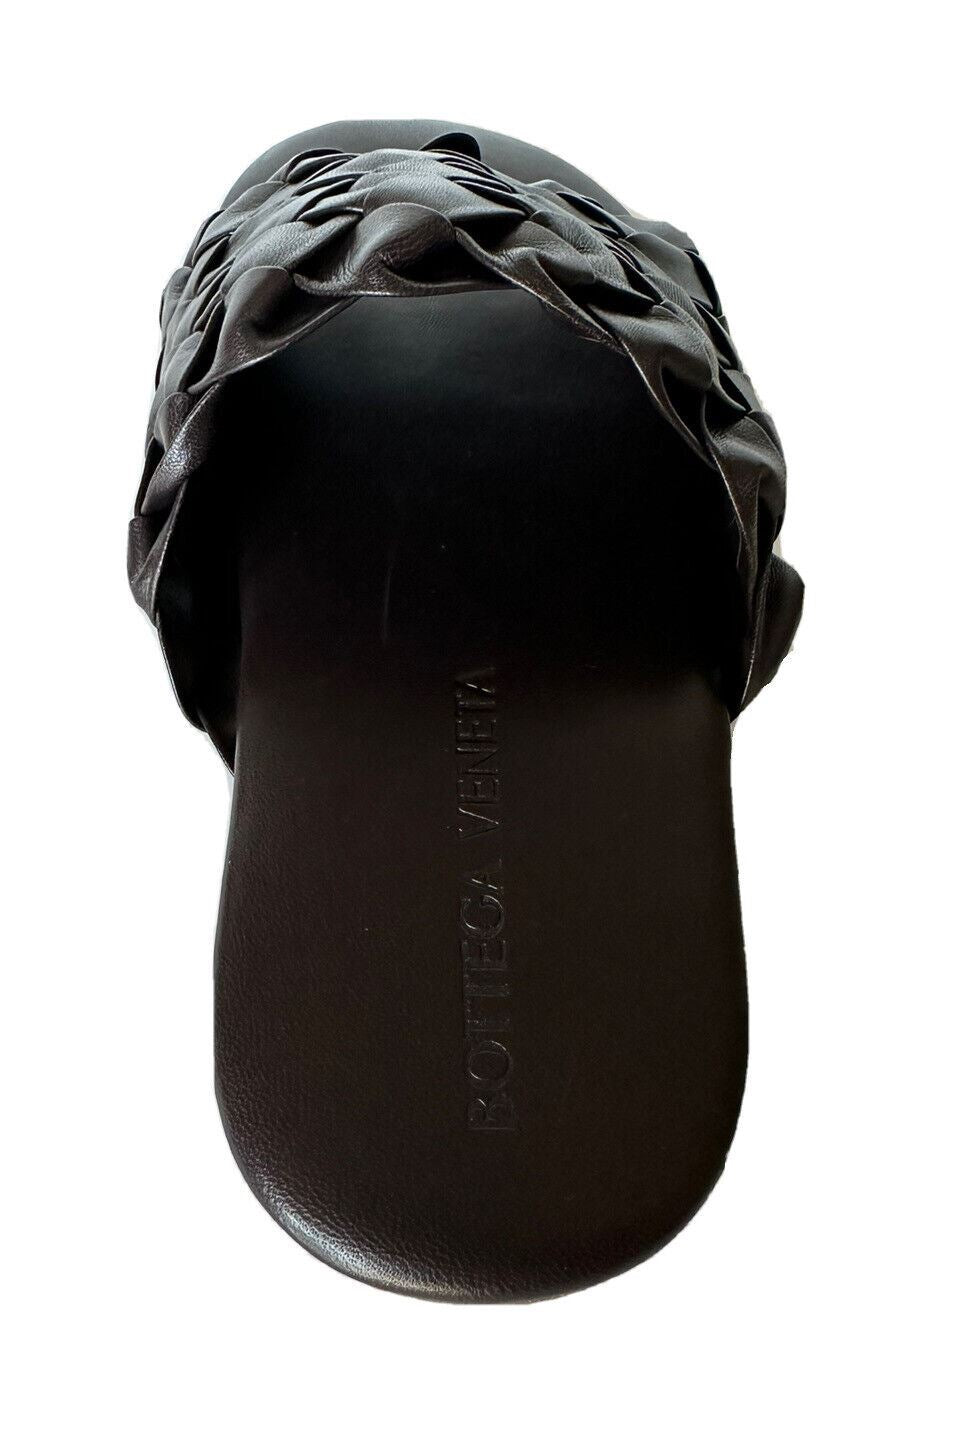 Мужские кожаные сандалии Intrecciato Fondente 7, США, 620298, стоимость NIB 1150 долларов США.